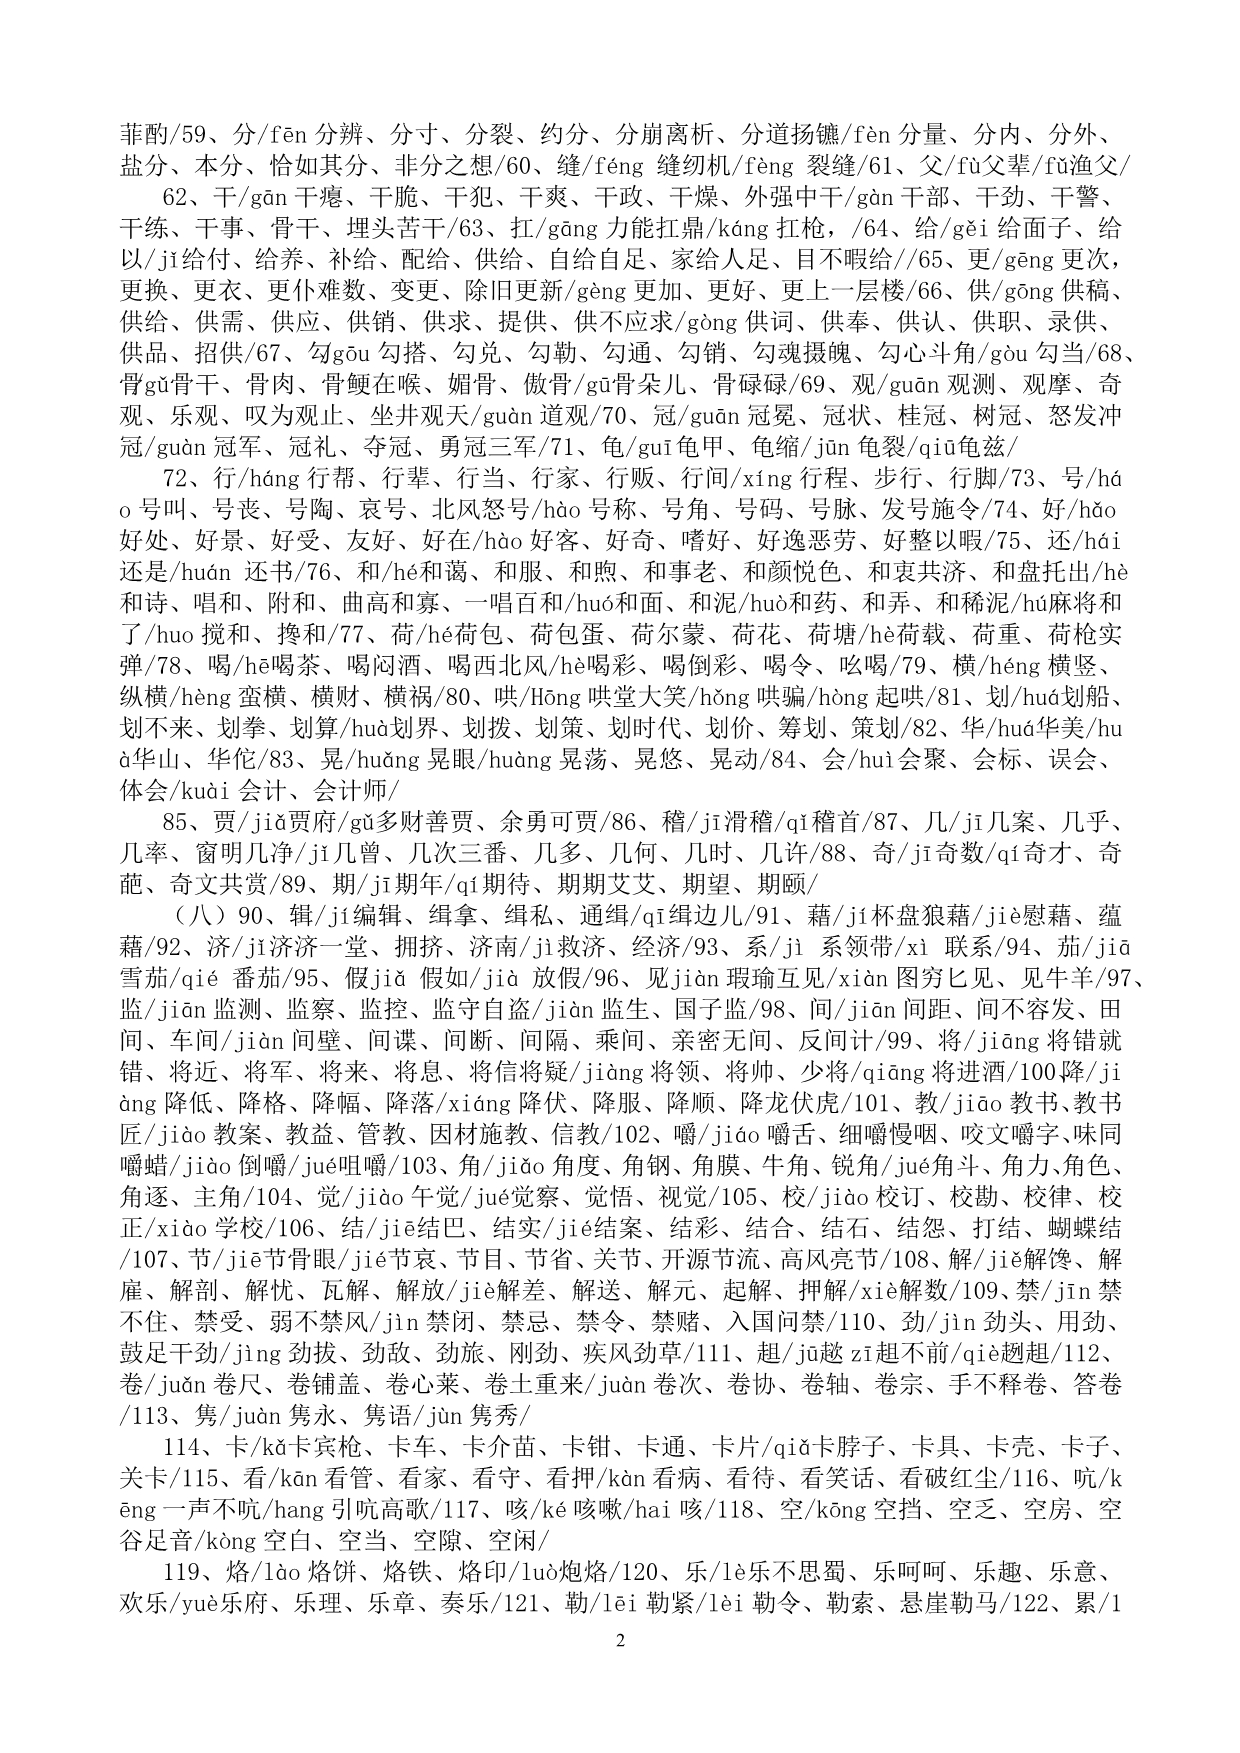 多音字集锦(原版)(2013-02-1814.31.11)_第2页